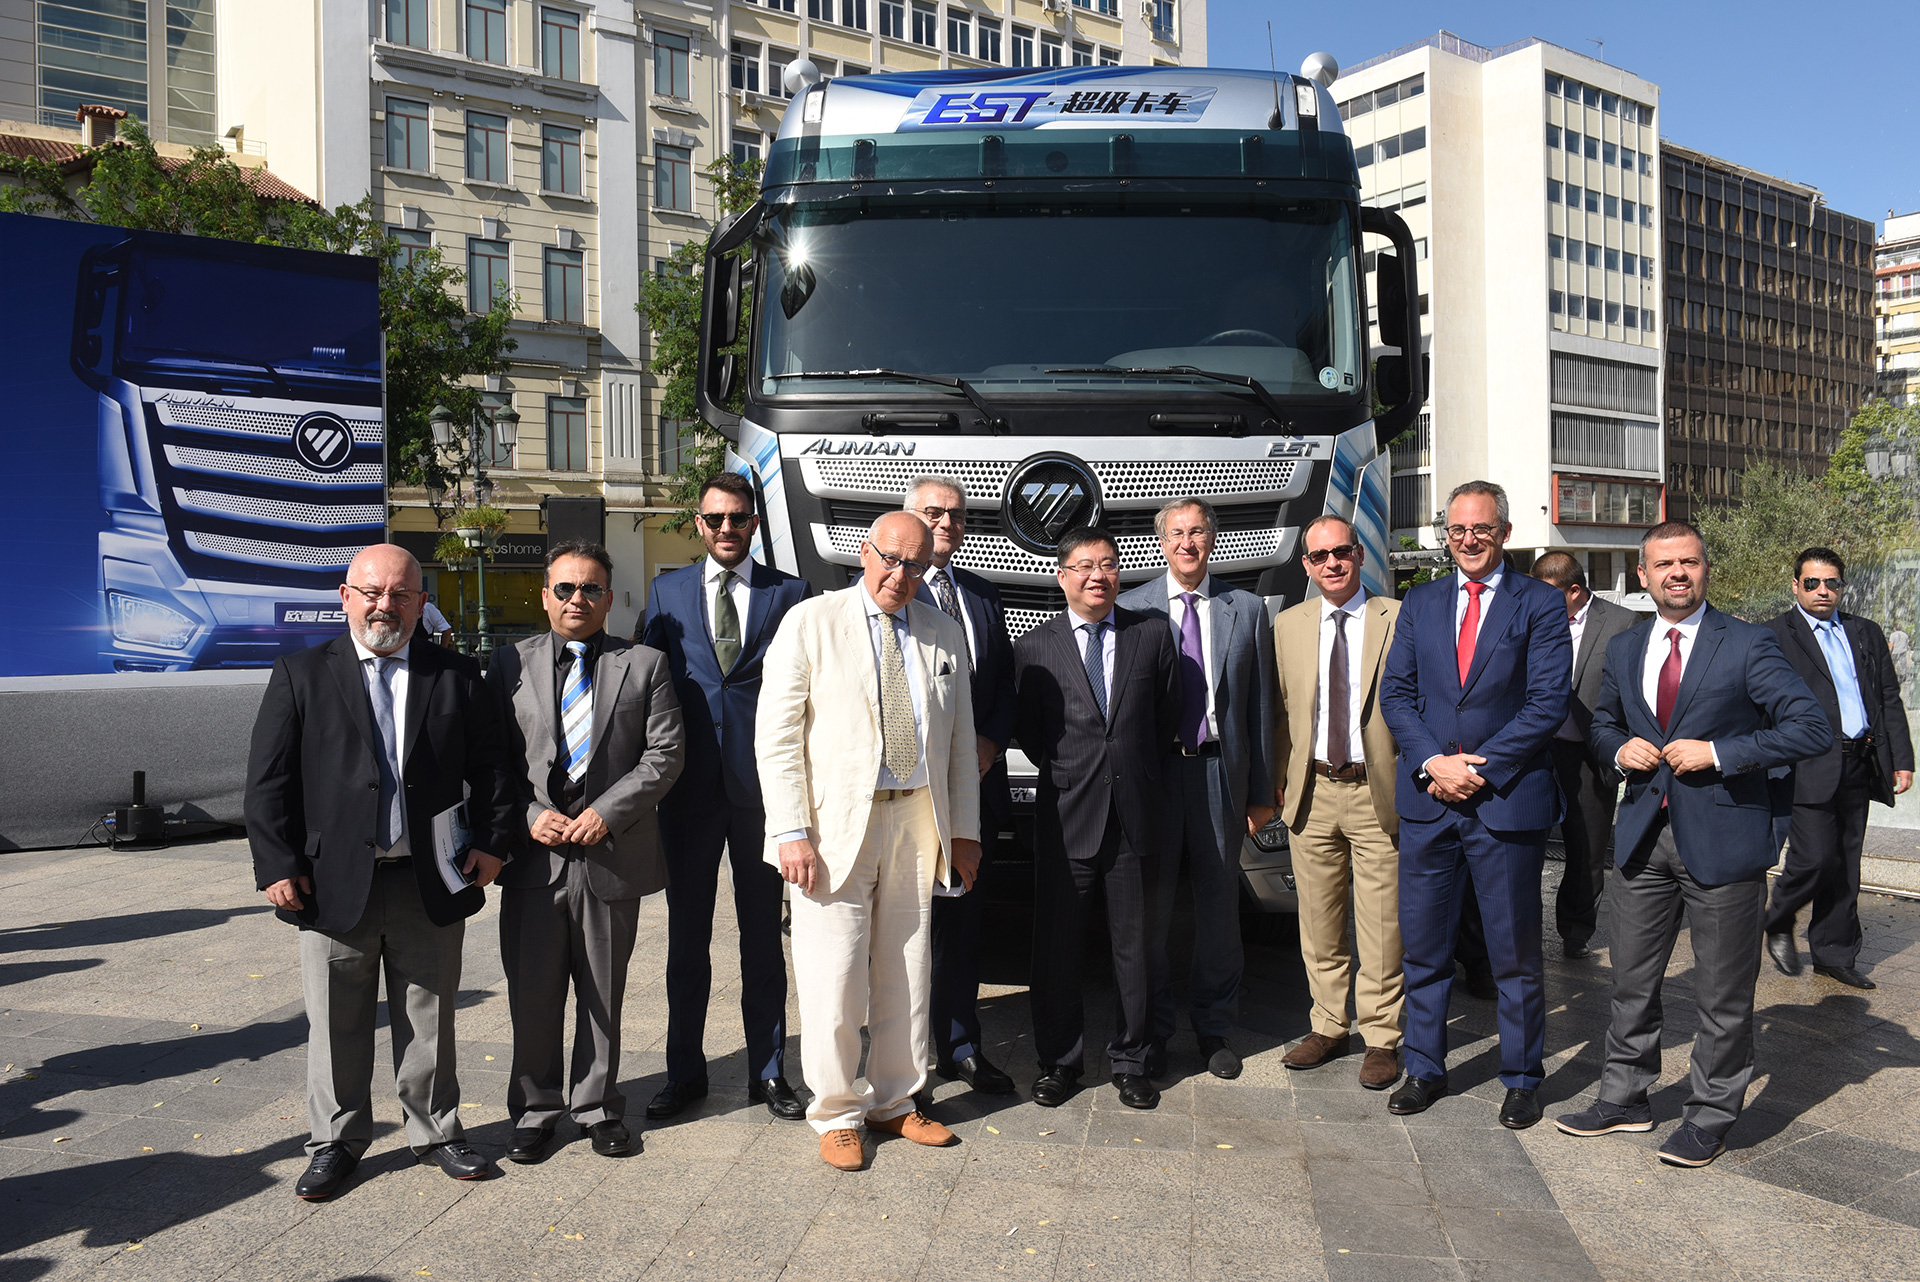 Образование CISCA - международной организации по созданию высокоинтеллектуальных магистральных грузовиков Foton